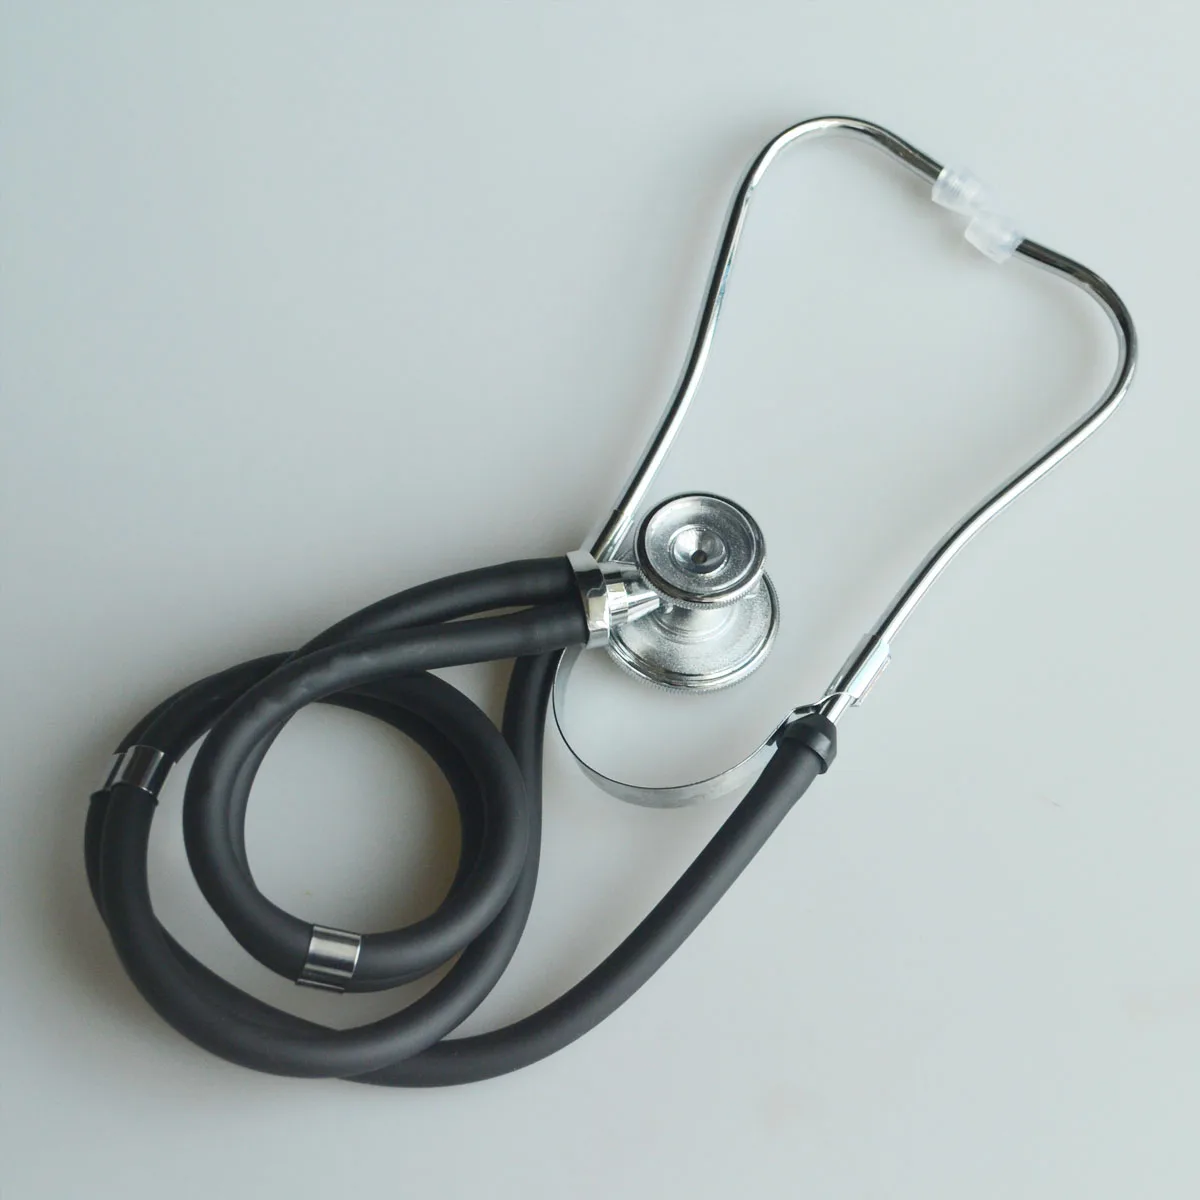 Здравоохранения профессиональные медицинские двойной двуголовый стетоскоп двуствольные функциональные высокое качество Спецодежда